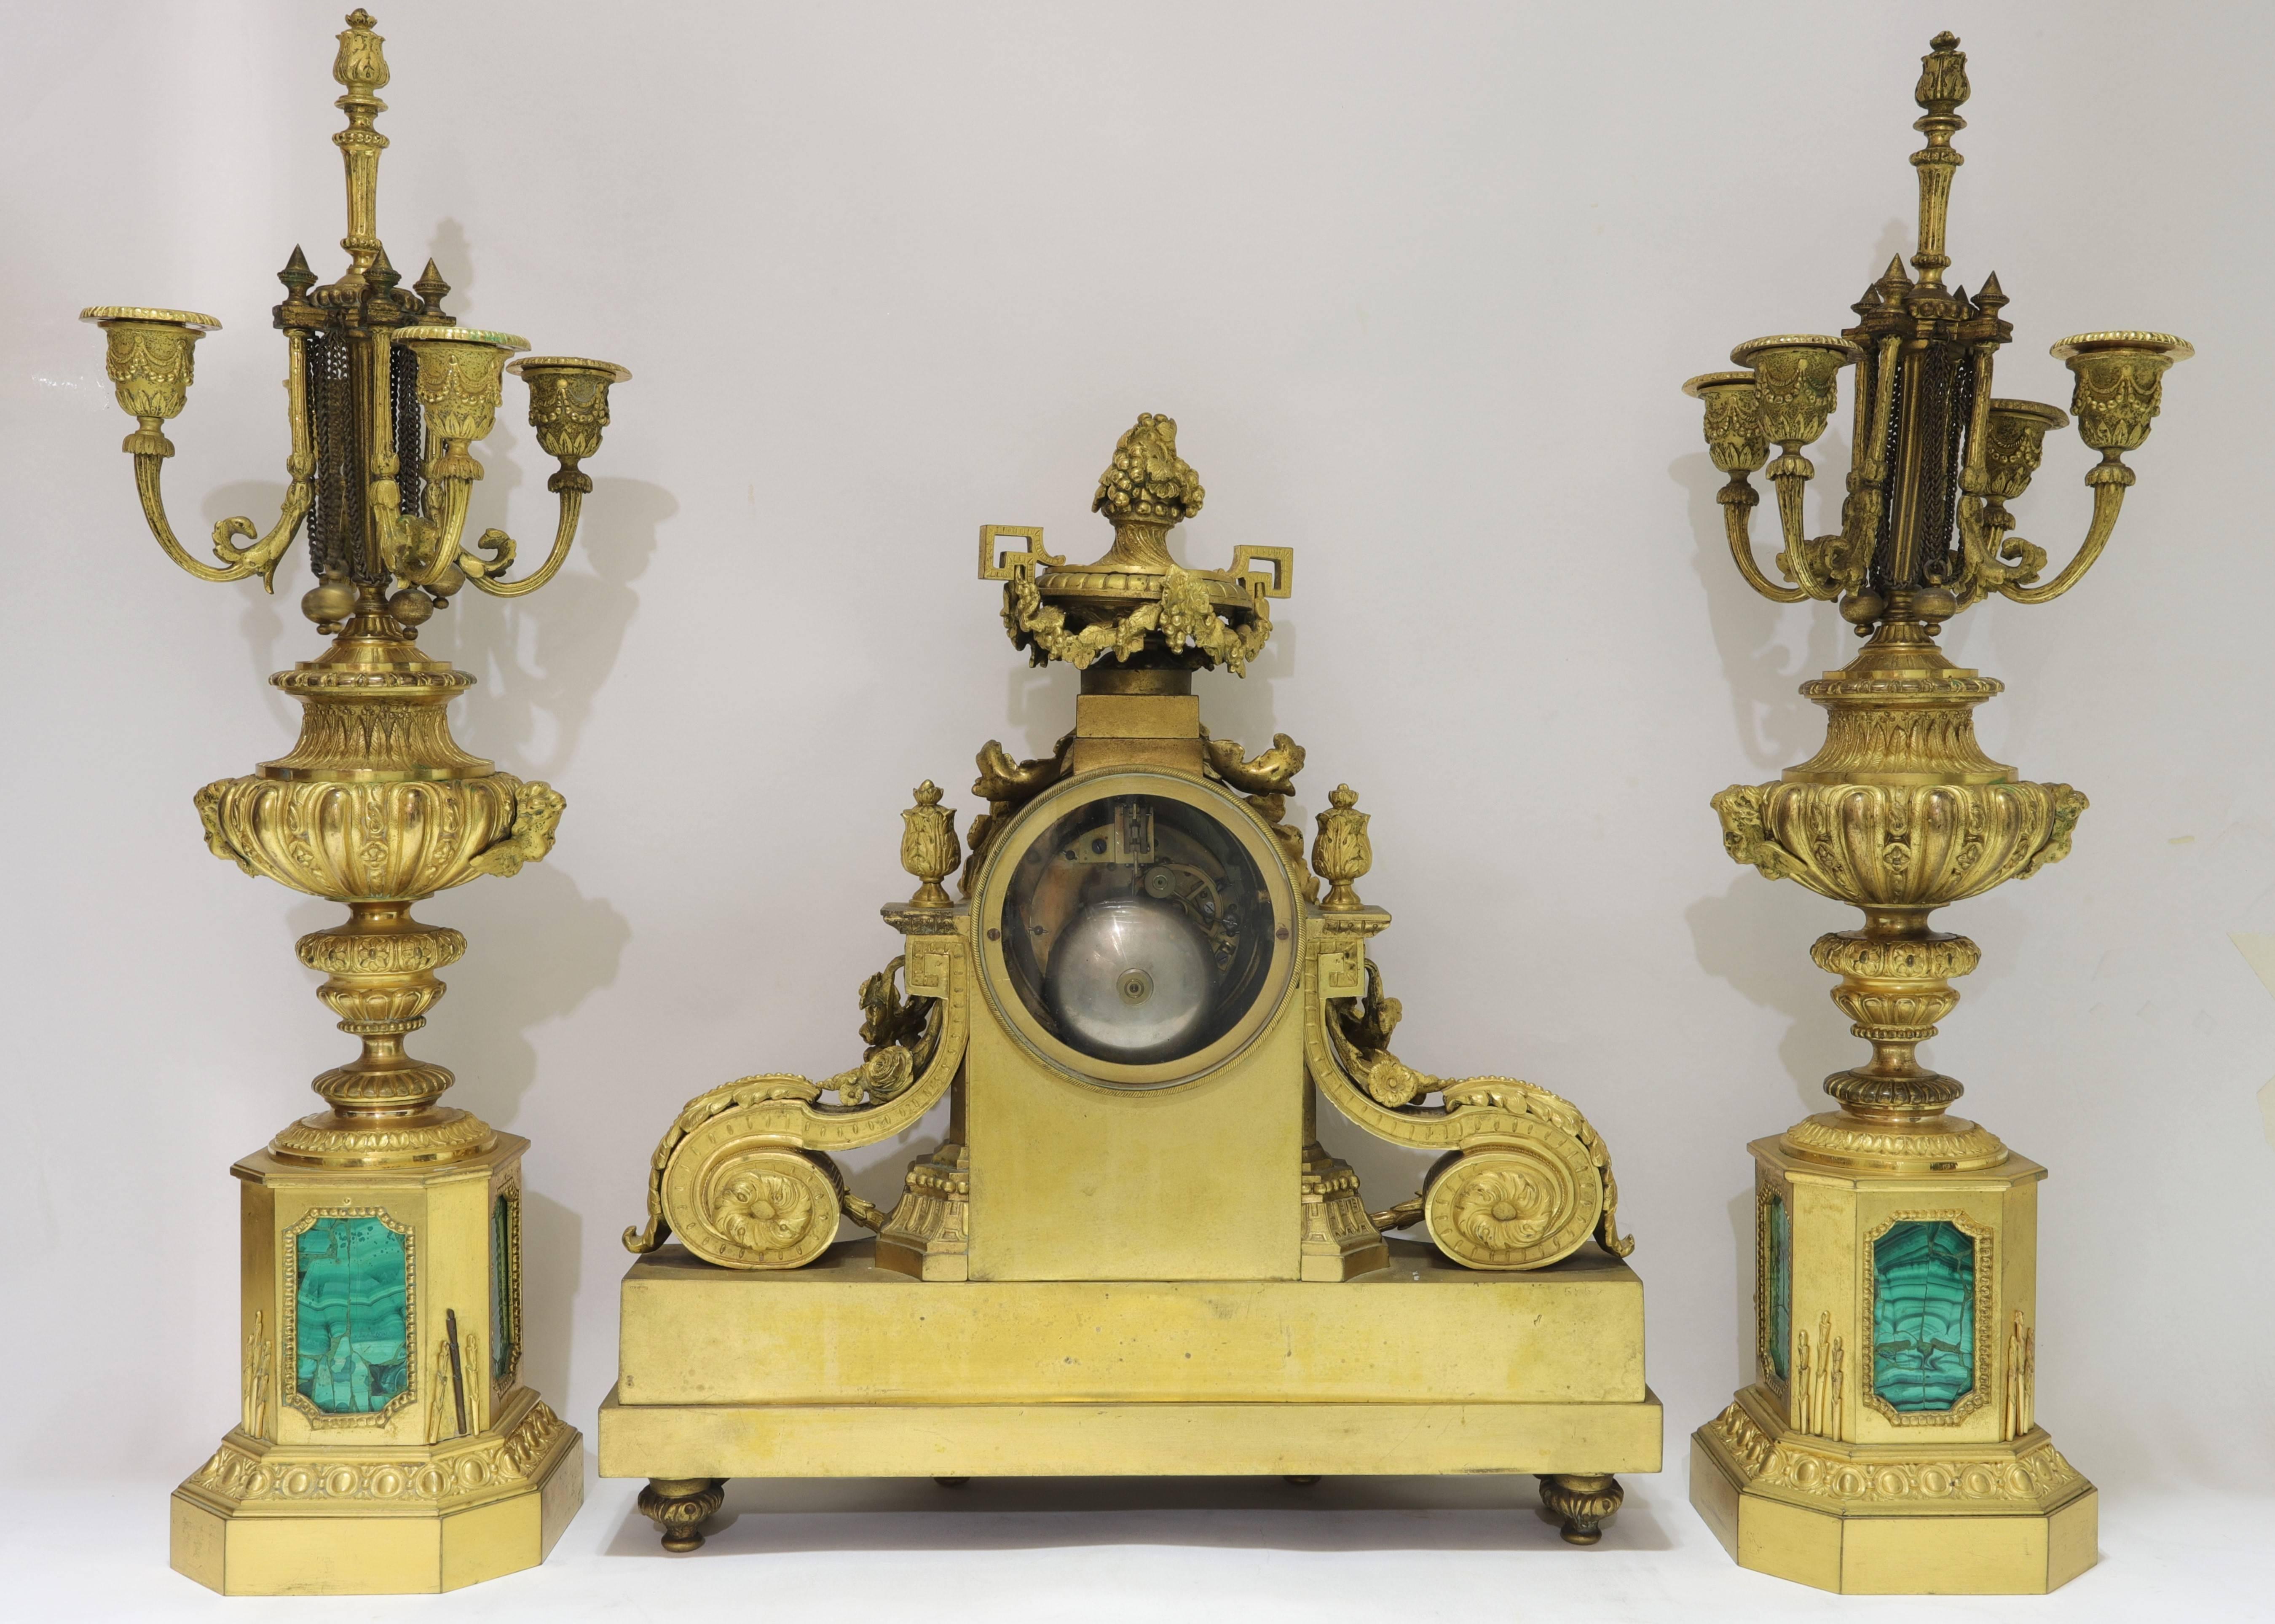 Sehr feine Qualität Louis XVI Stil vergoldeter Bronze und Malachit dreiteilige Uhr und Kandelaber Uhr Set.
Das Zifferblatt signiert